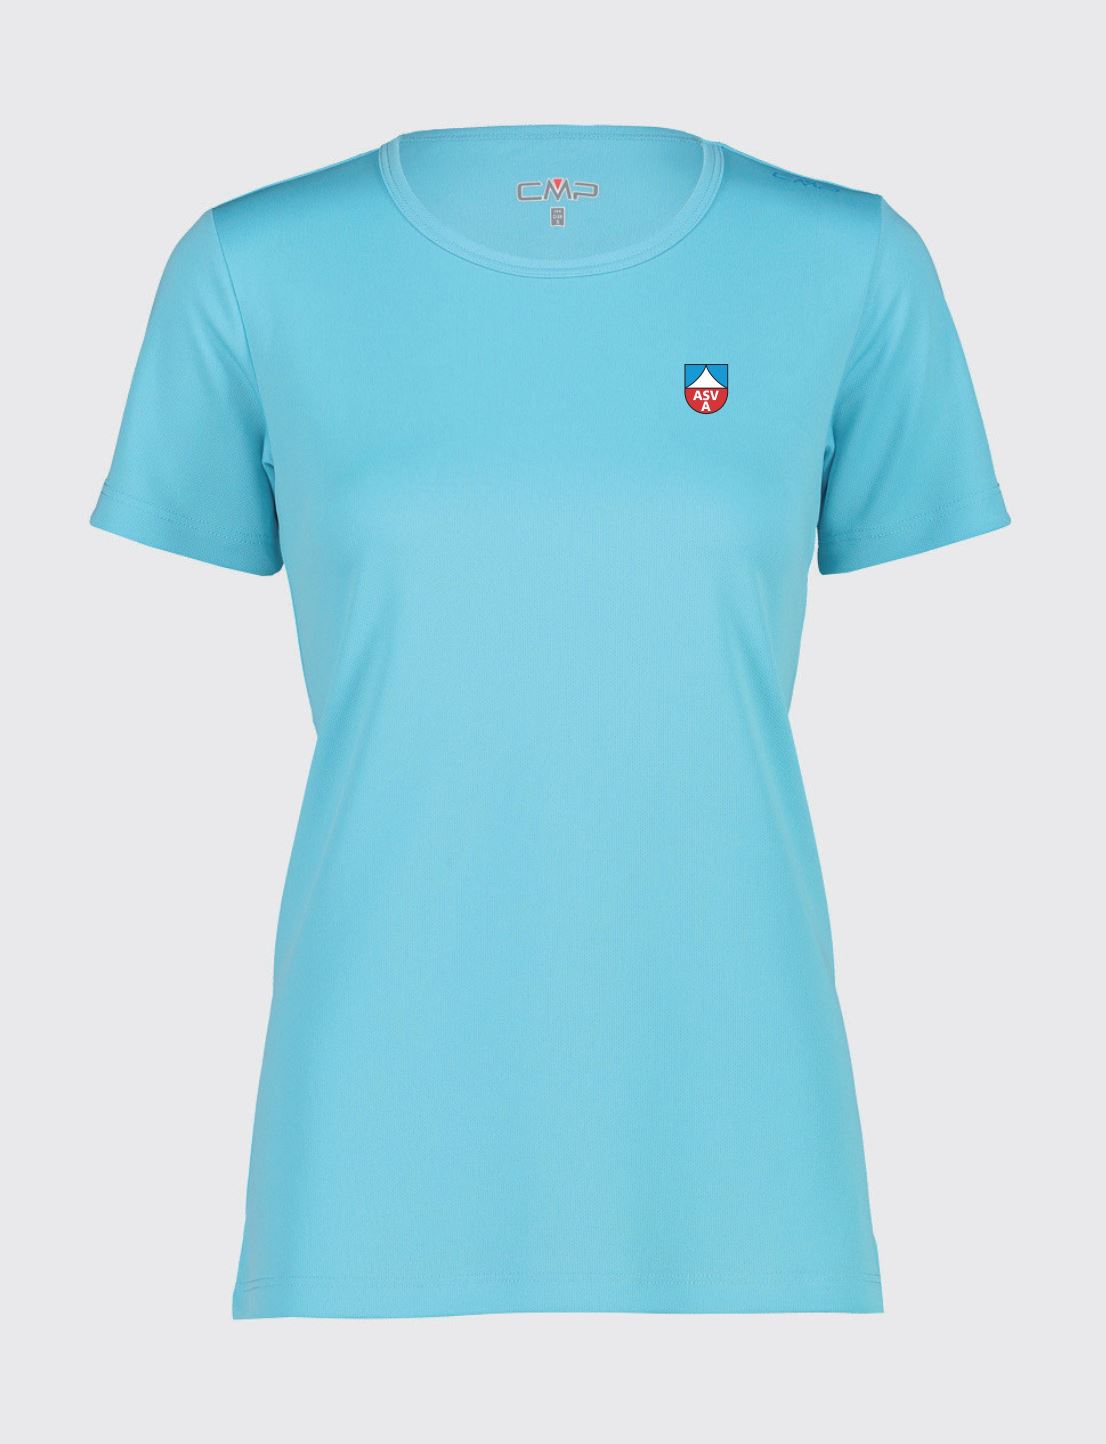 T-shirt ASV Aldein blau - Frau